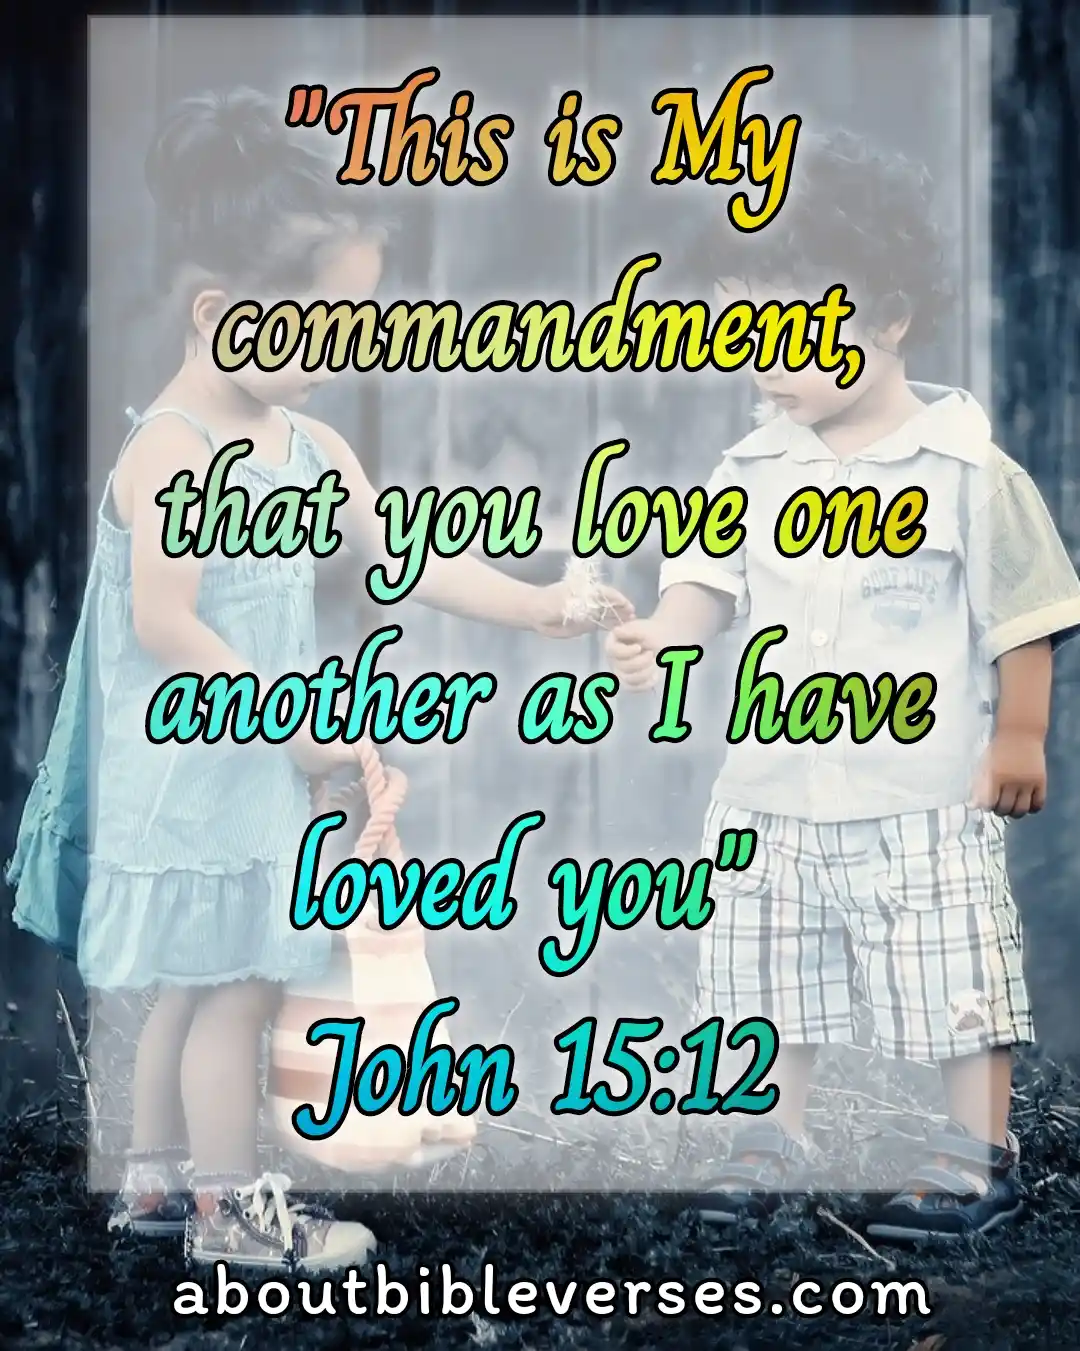 today bible verse (John 15:12)